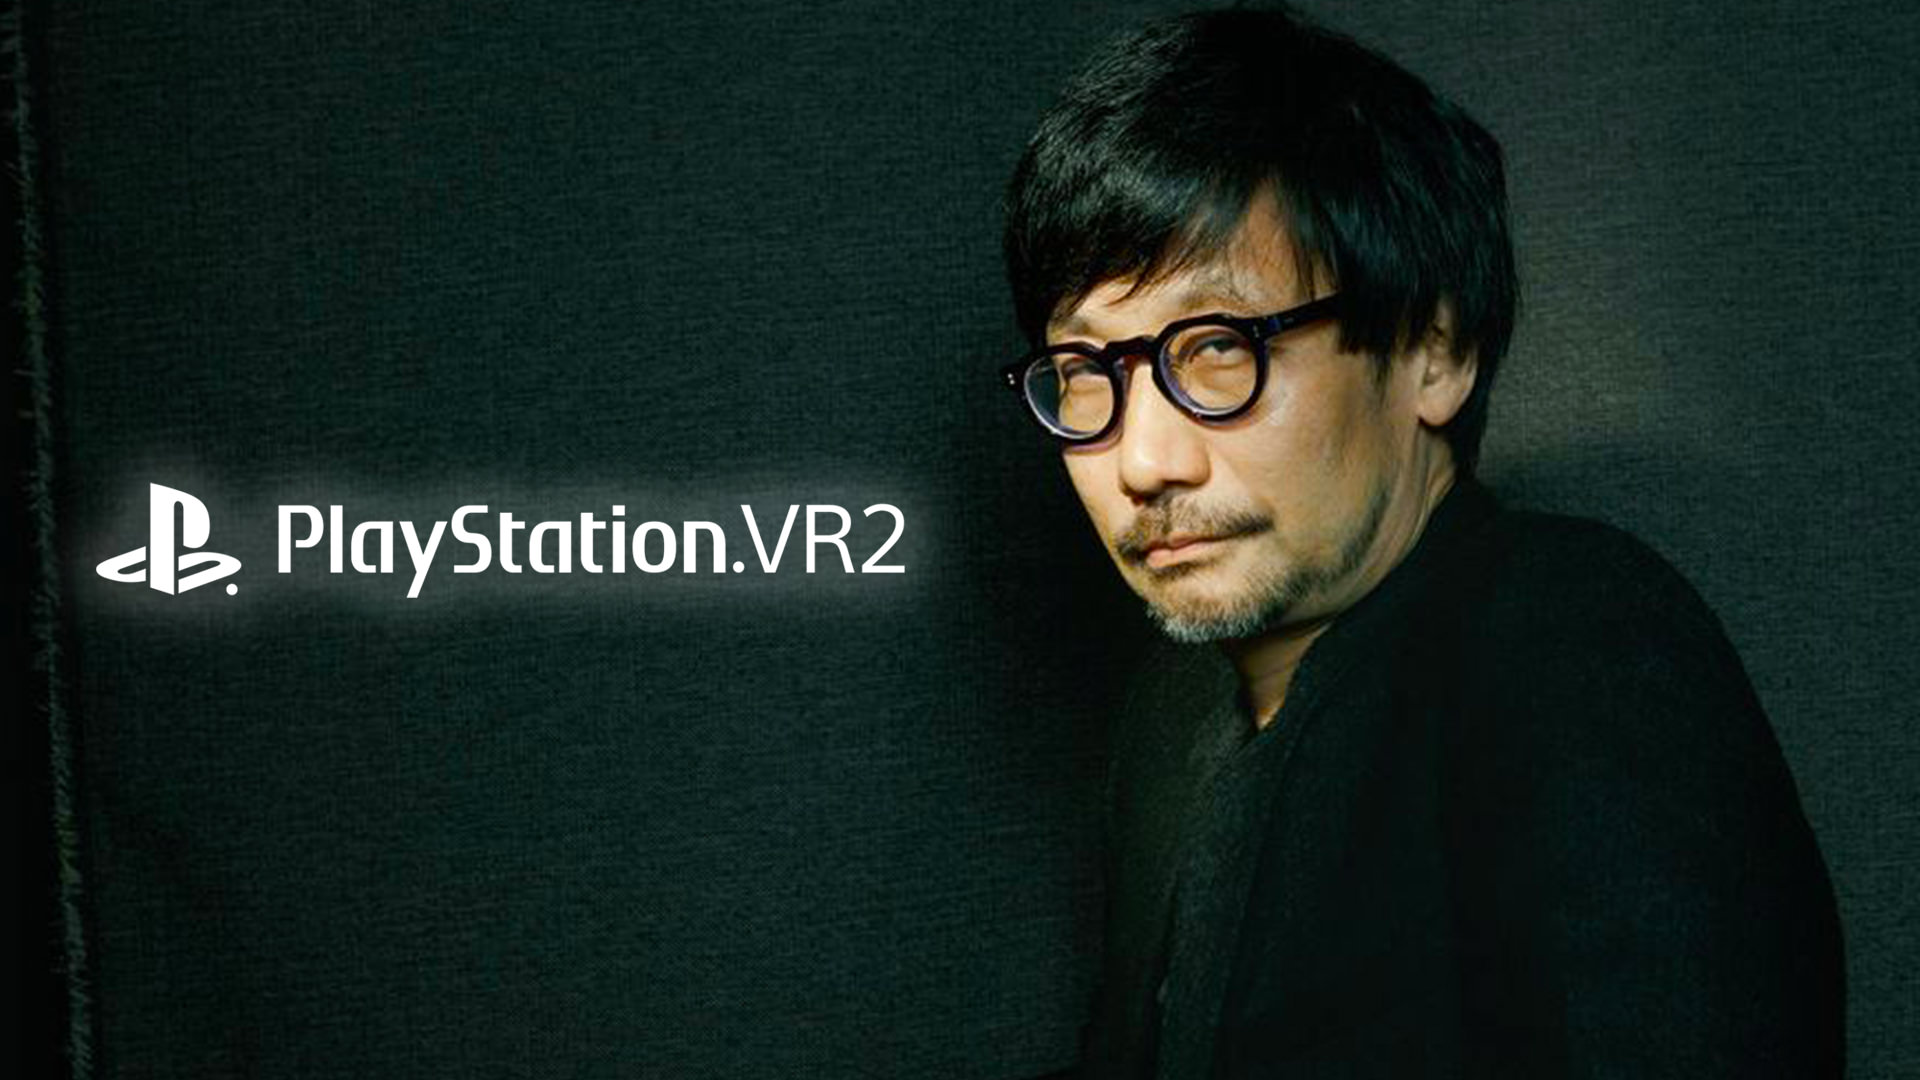 شایعه: ساخت یک بازی جدید برای PSVR2 توسط هیدئو کوجیما